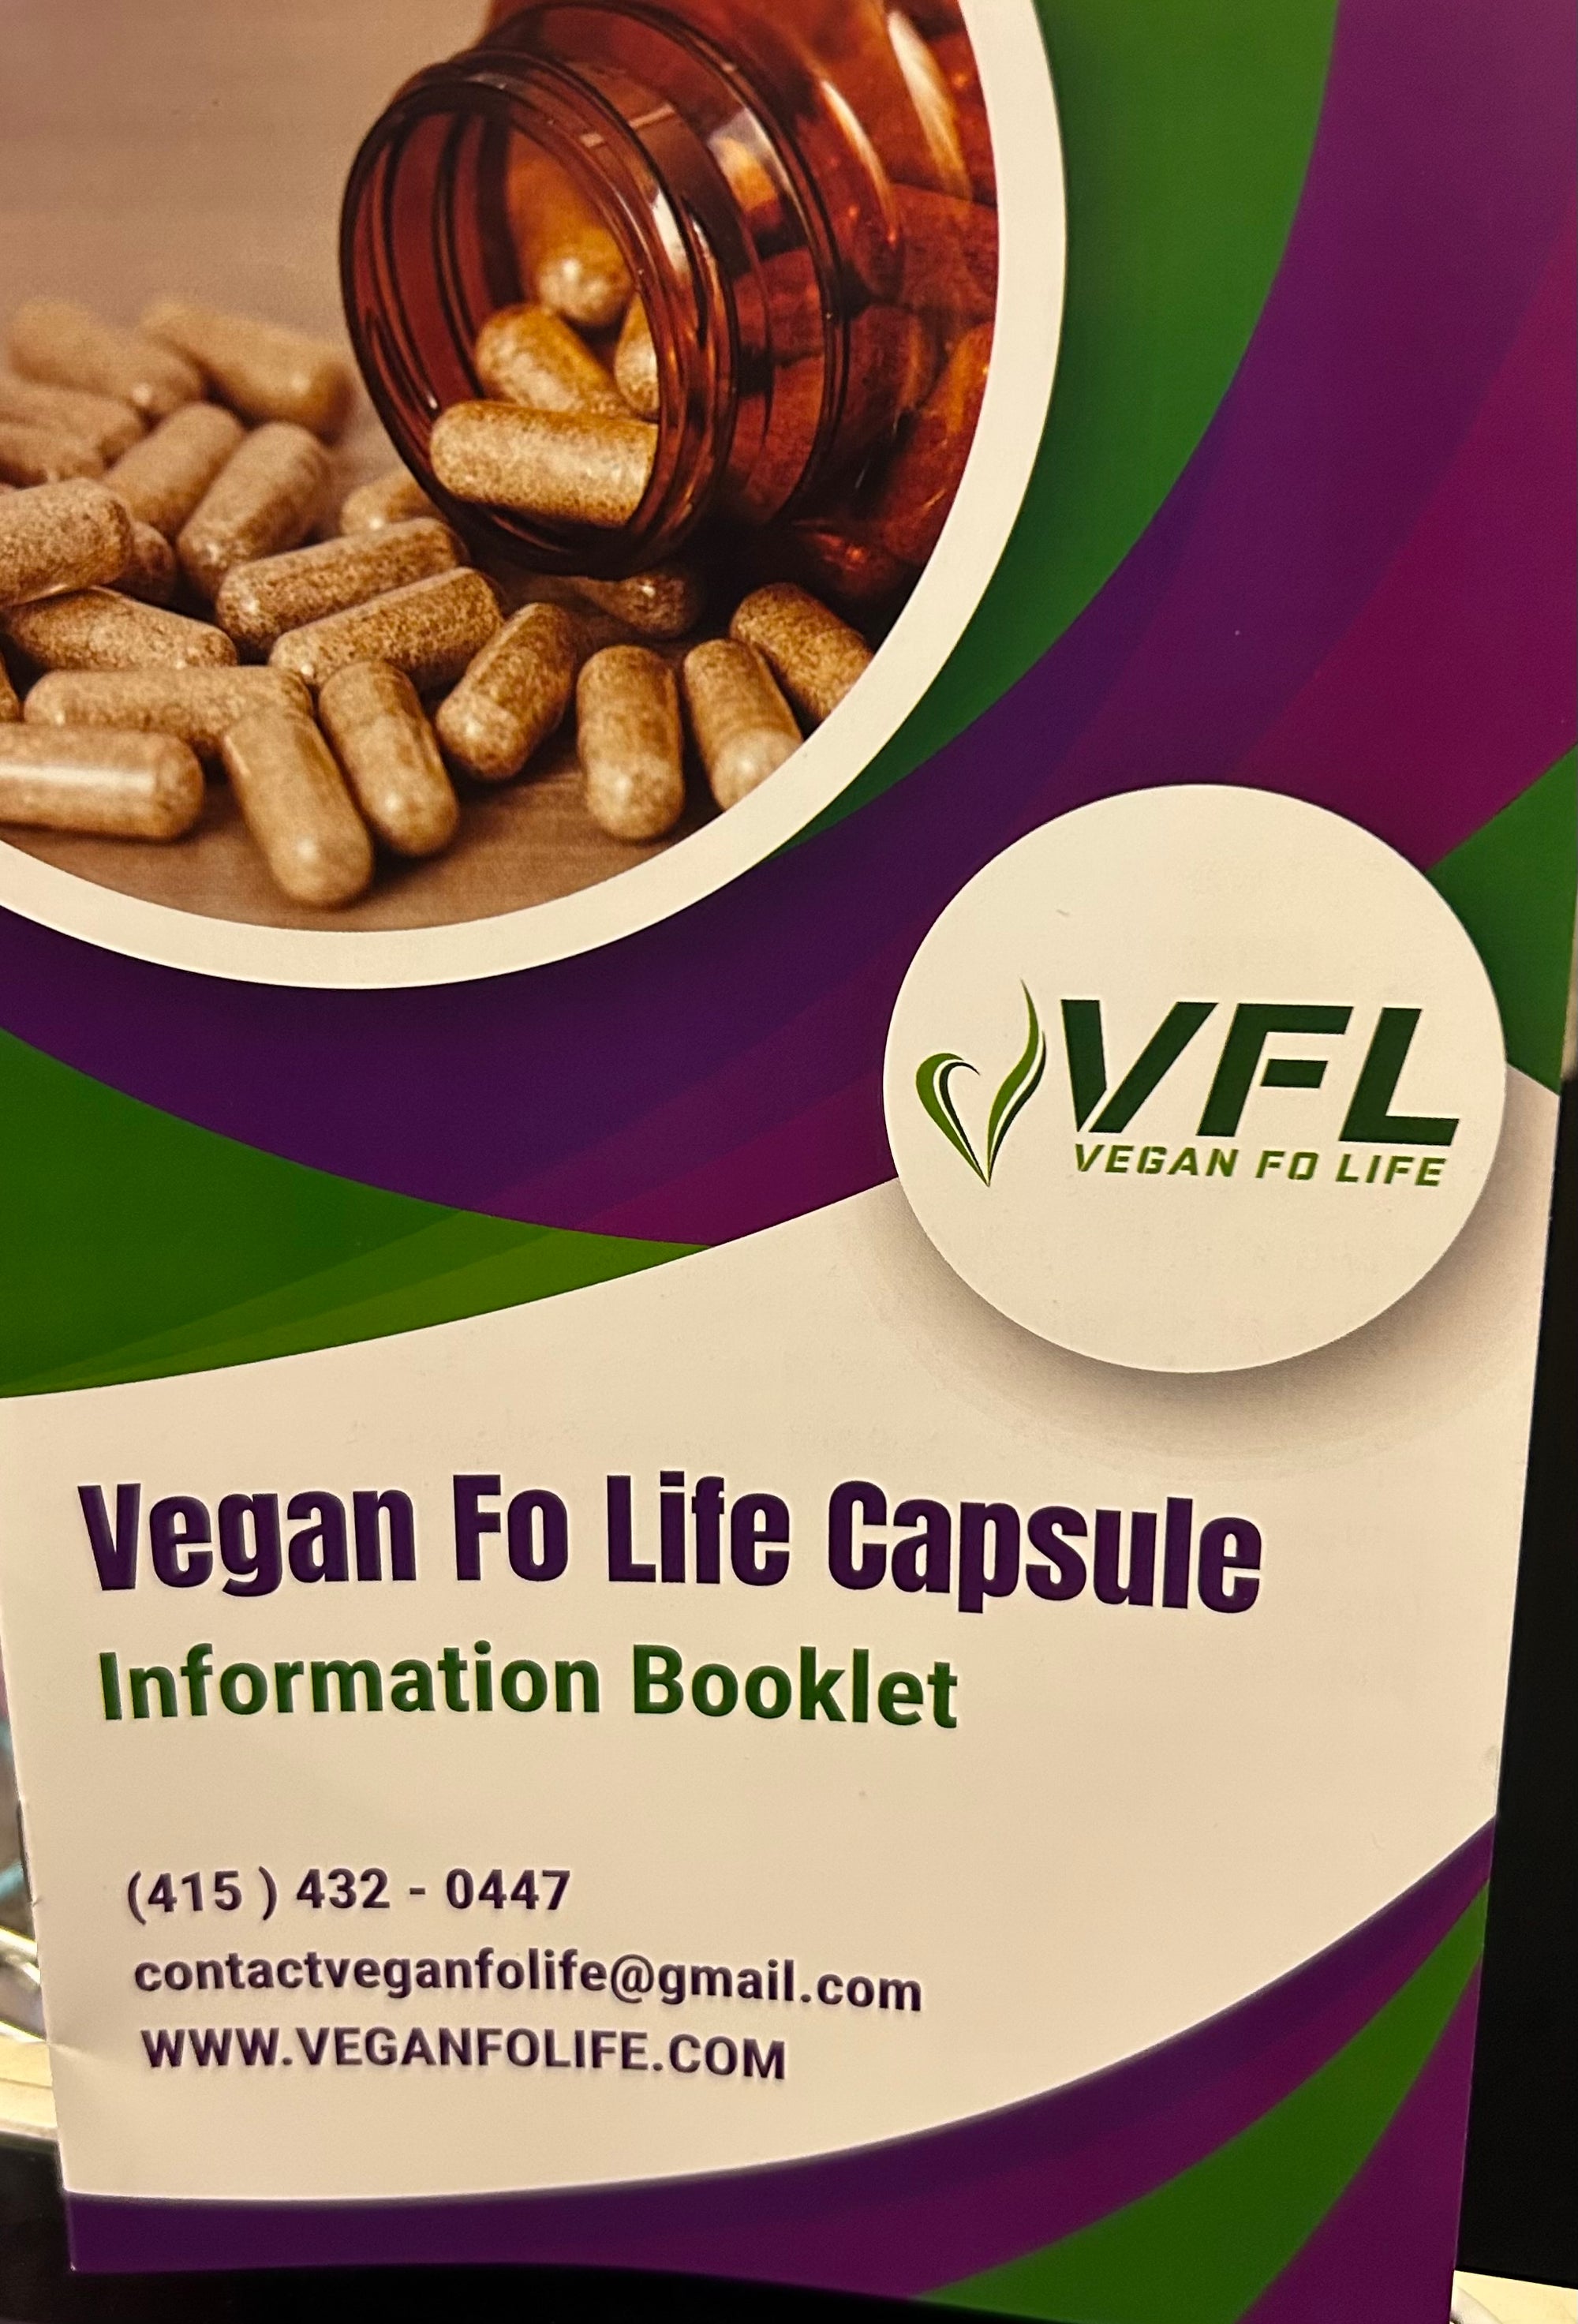 Vegan Fo Life Capsule information booklet